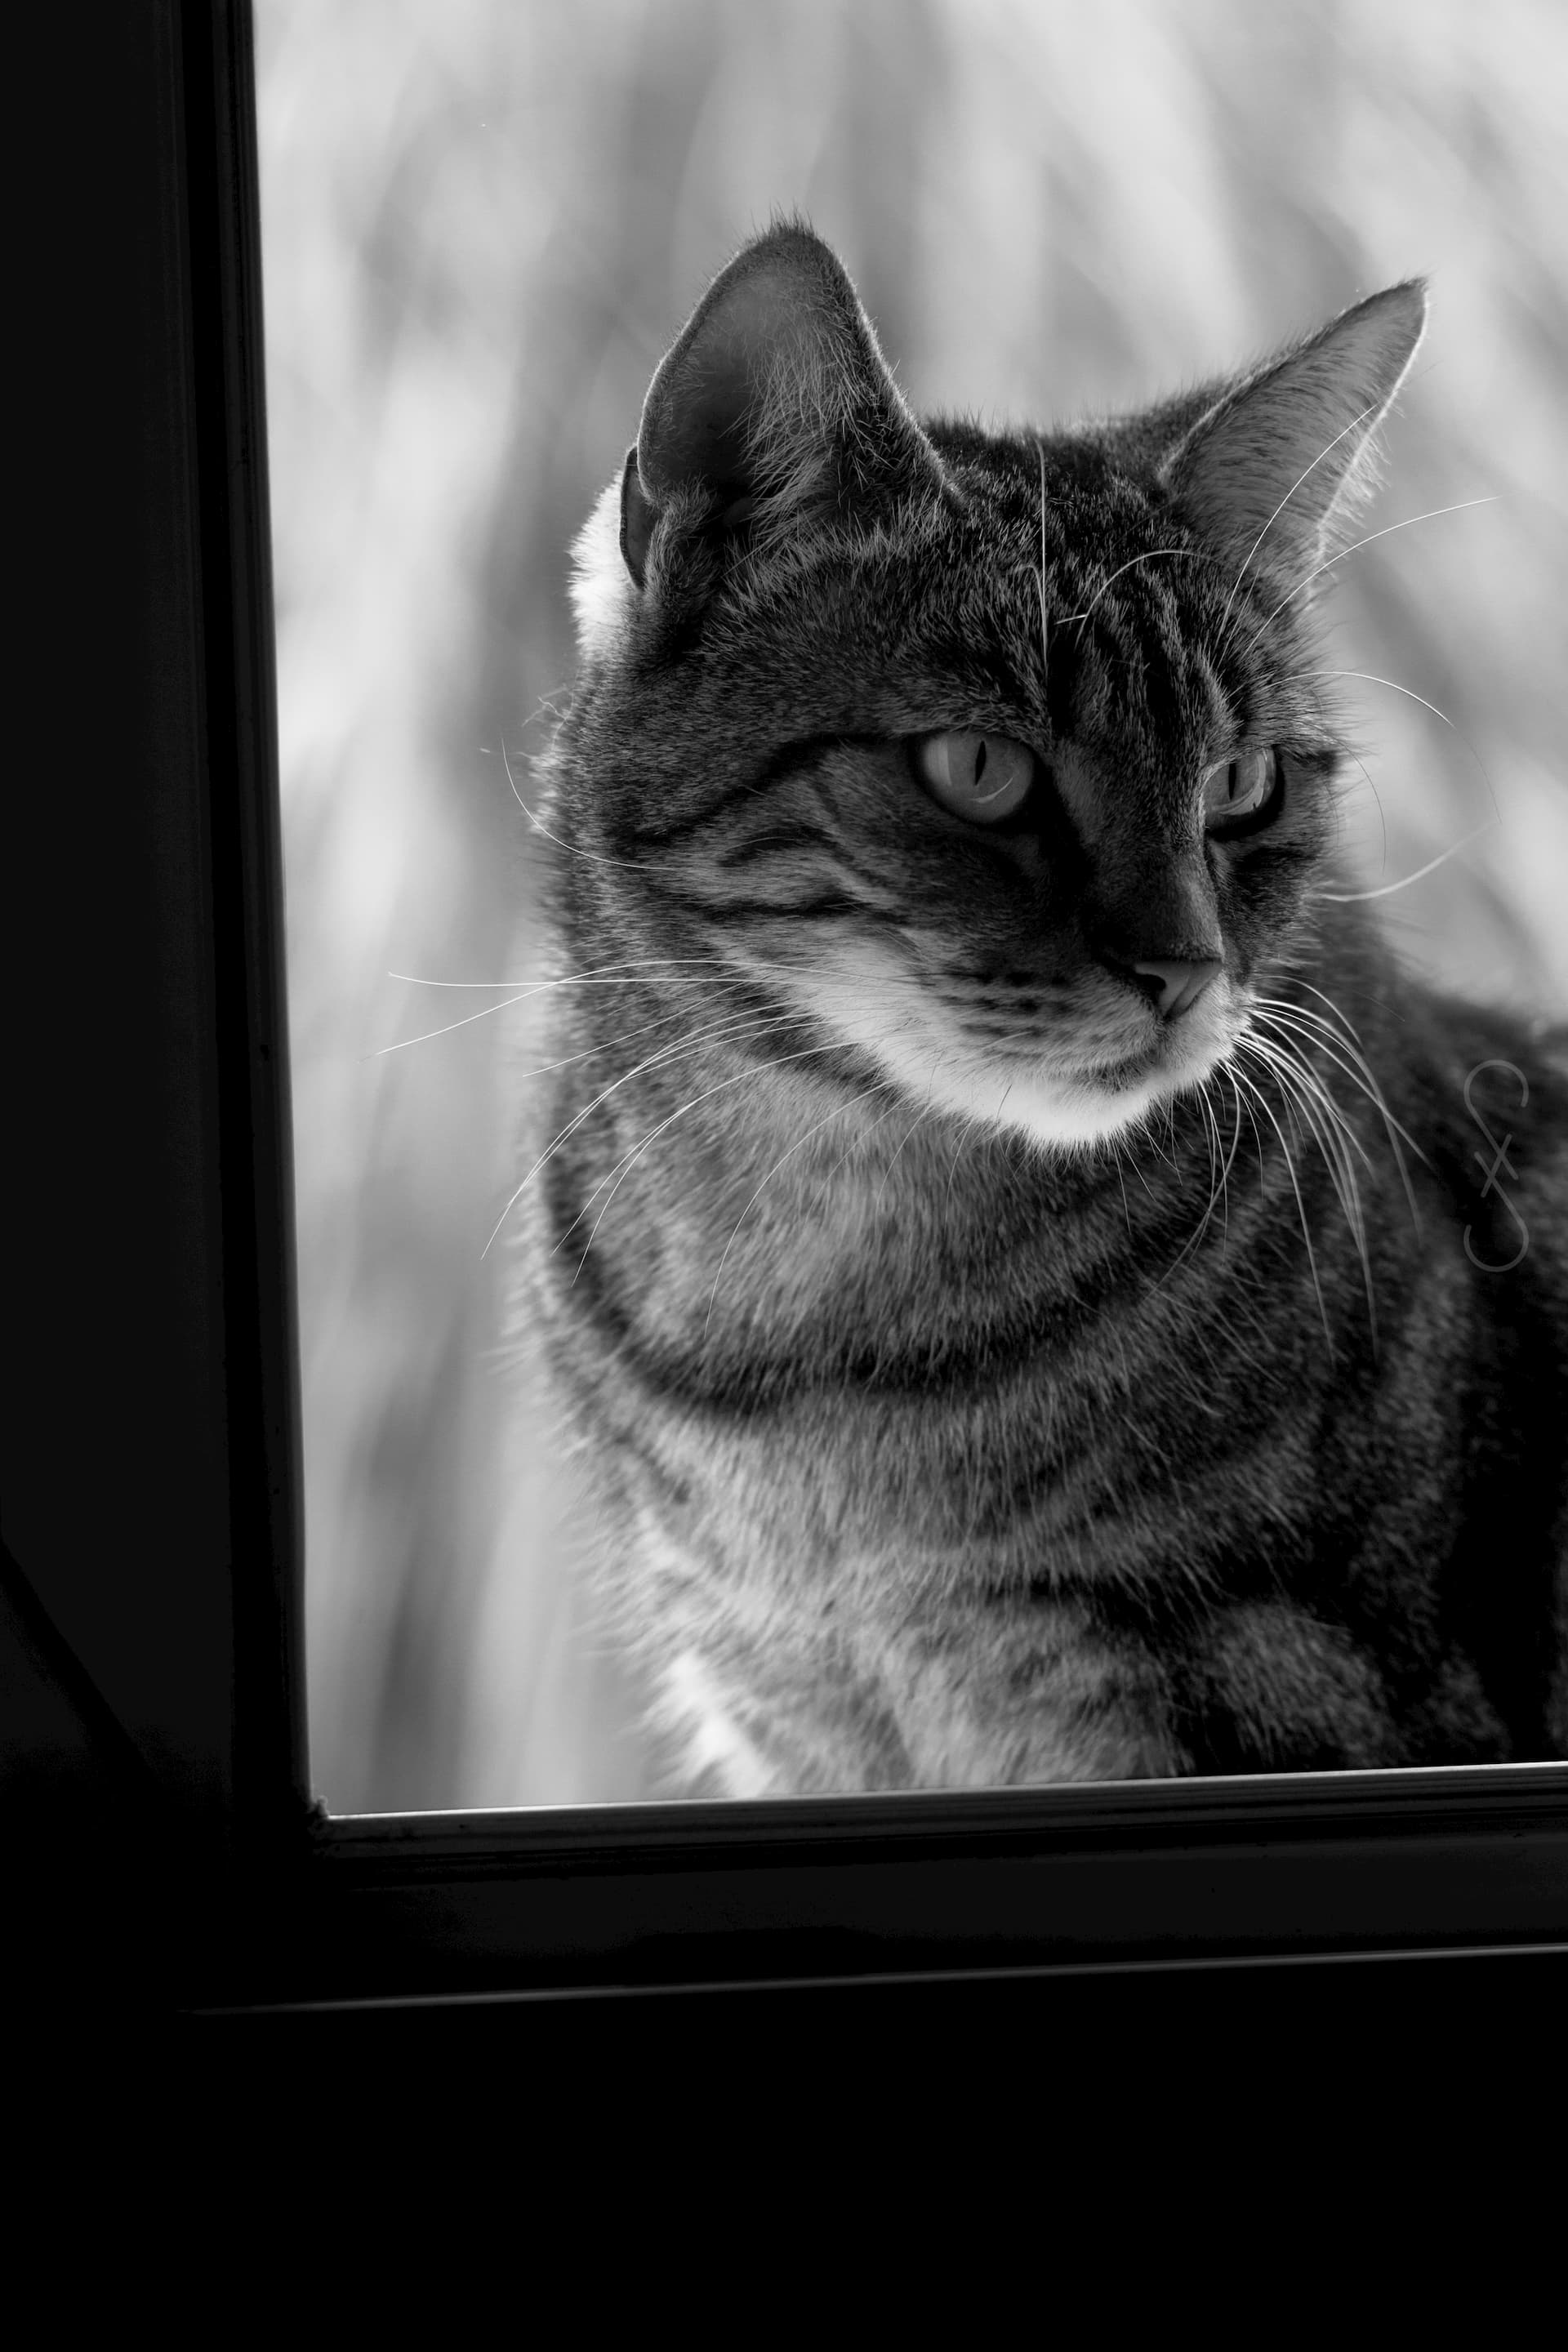 Portrait d'un chat regardant, vers la droite, à l'intérieur d'une maison par la fenêtre